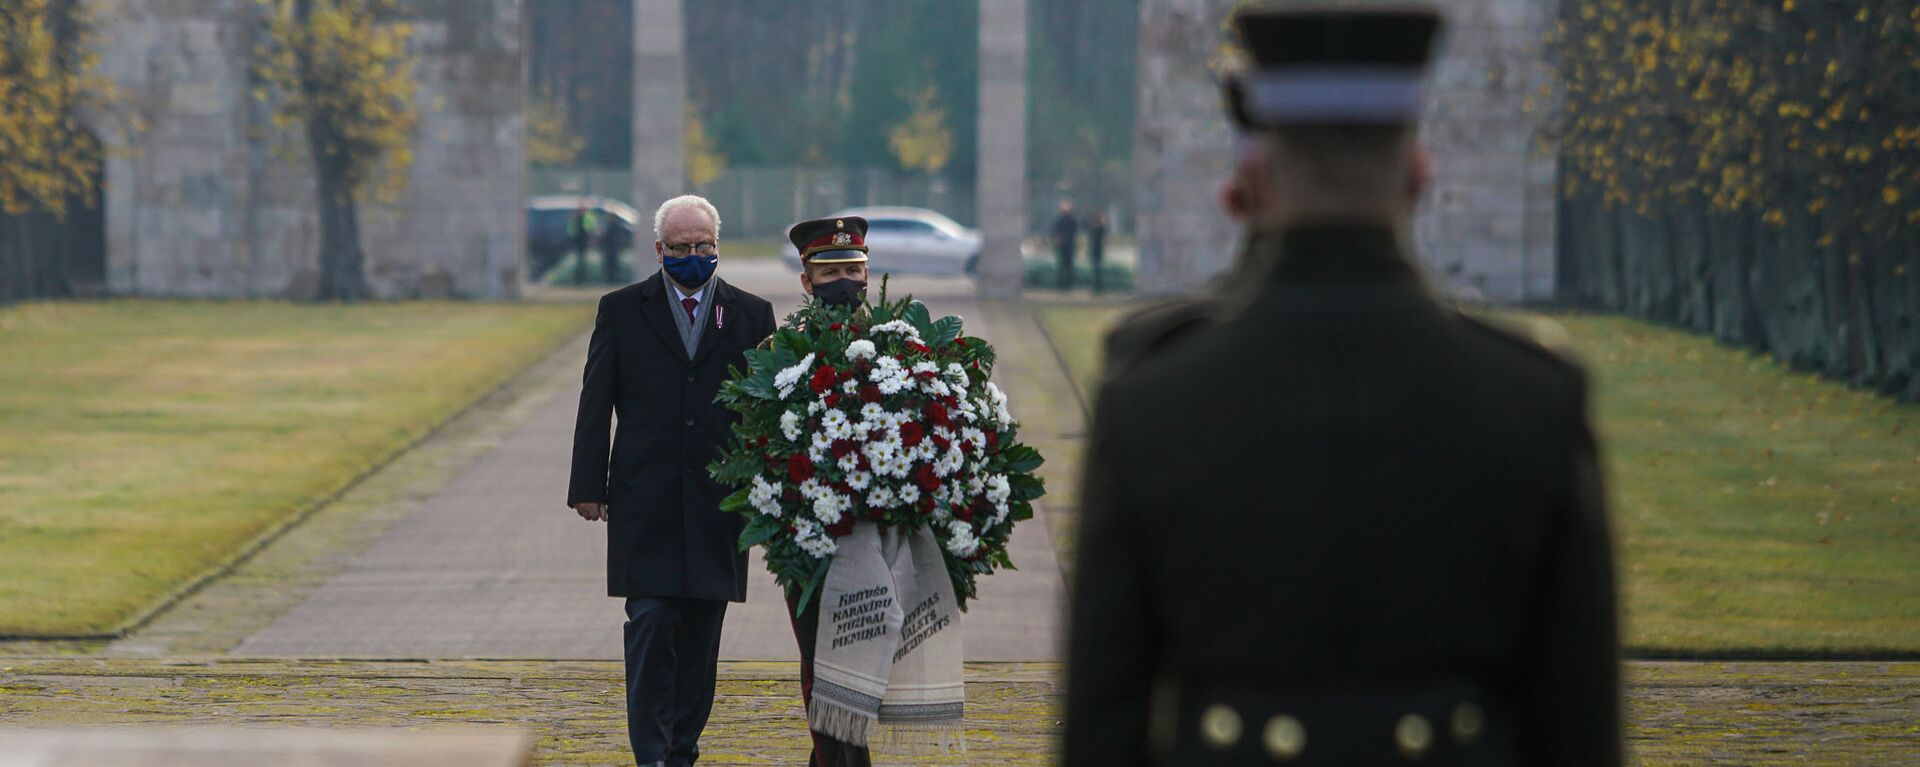 Президент Латвии Эгилс Левитс на Братском кладбище в Риге почтил память павших воинов - Sputnik Латвия, 1920, 11.11.2020